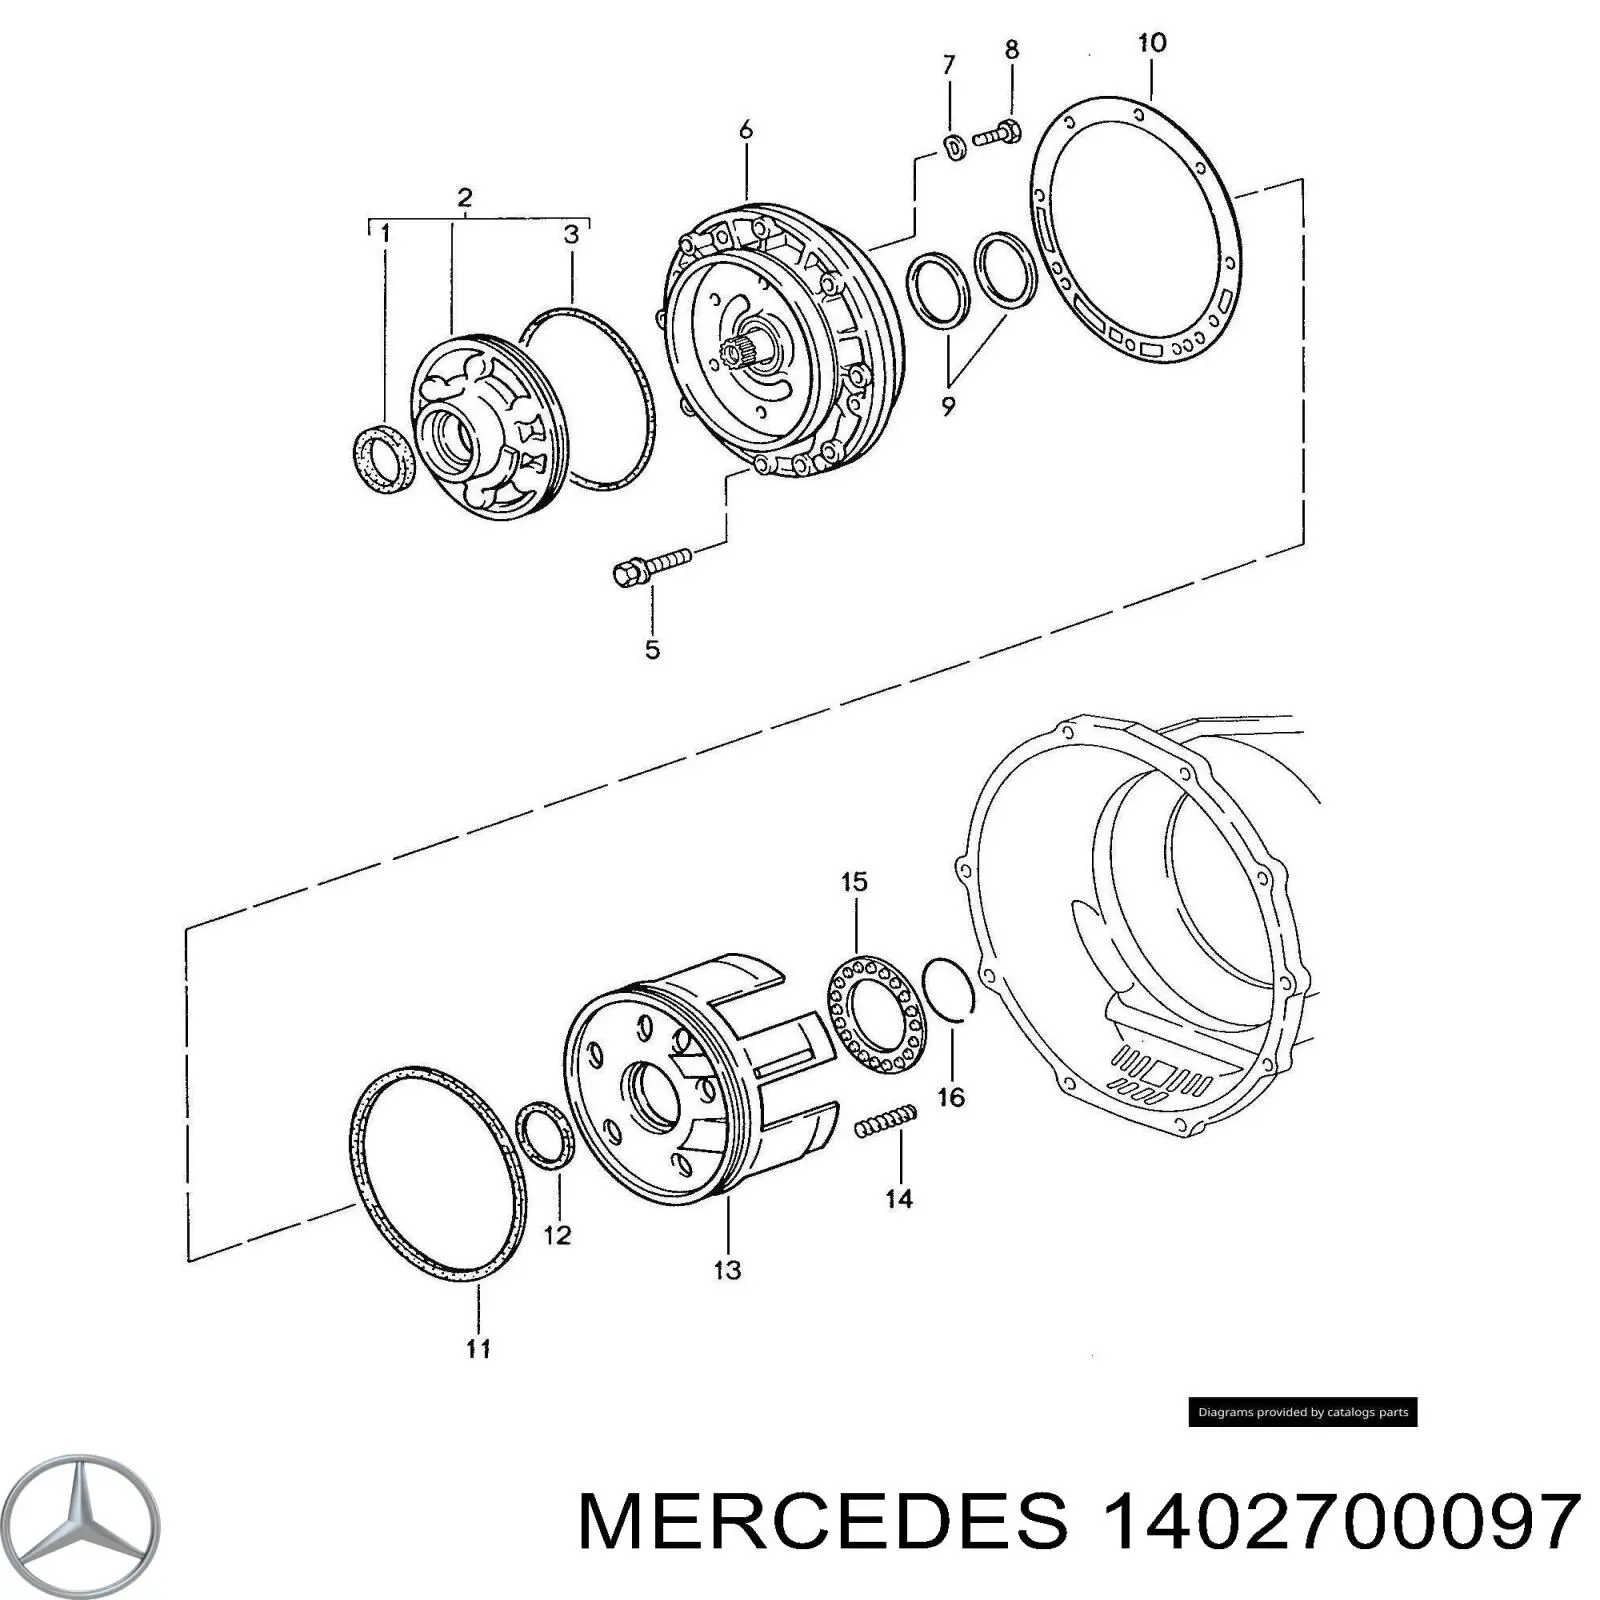 A1402700097 Mercedes bomba de aceite transmision caja de cambios